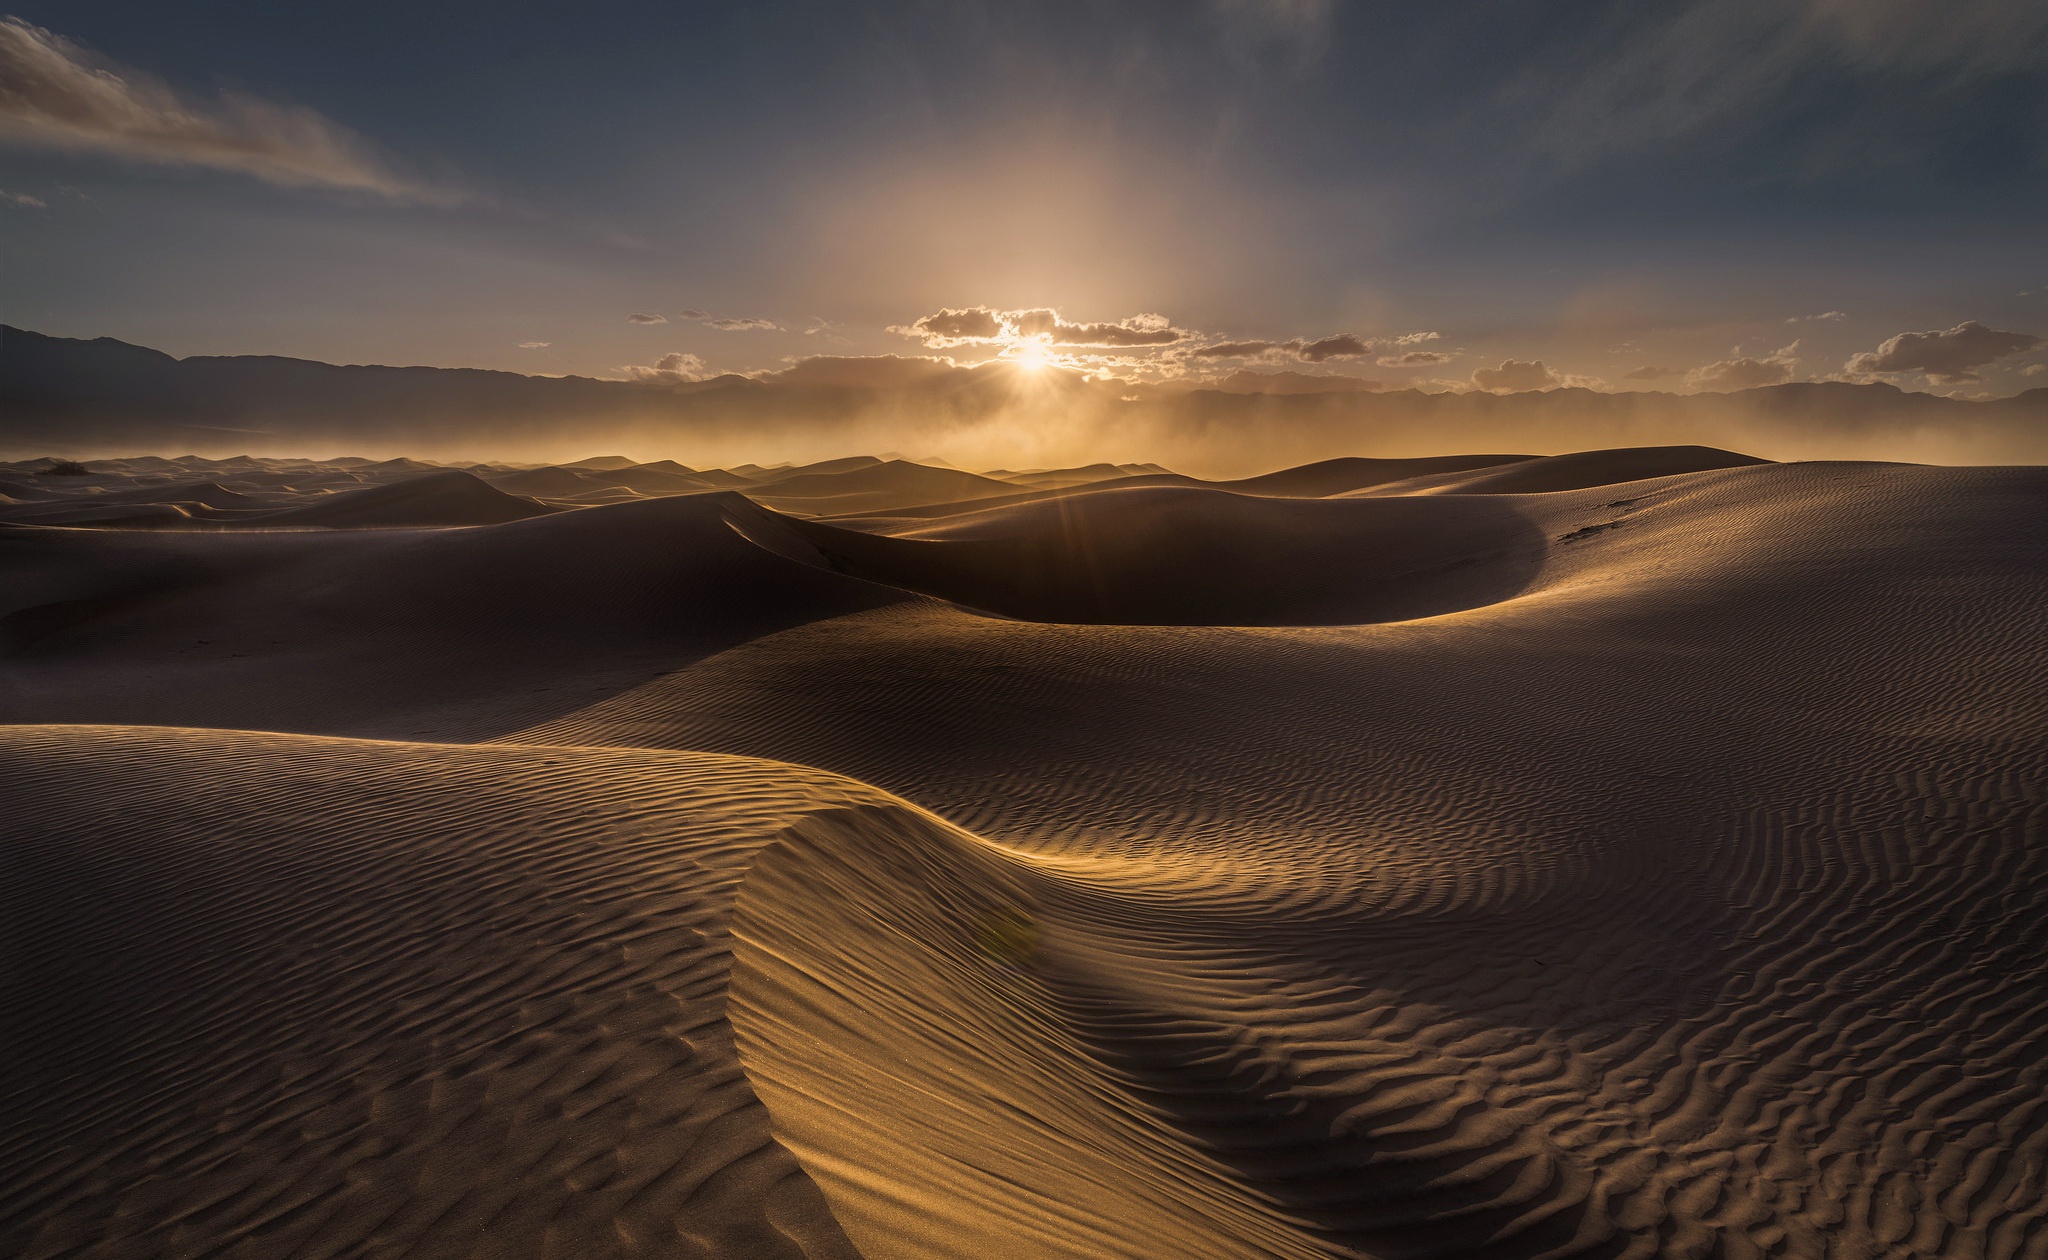 Desert dunes with gradient skies iPhone wallpapers